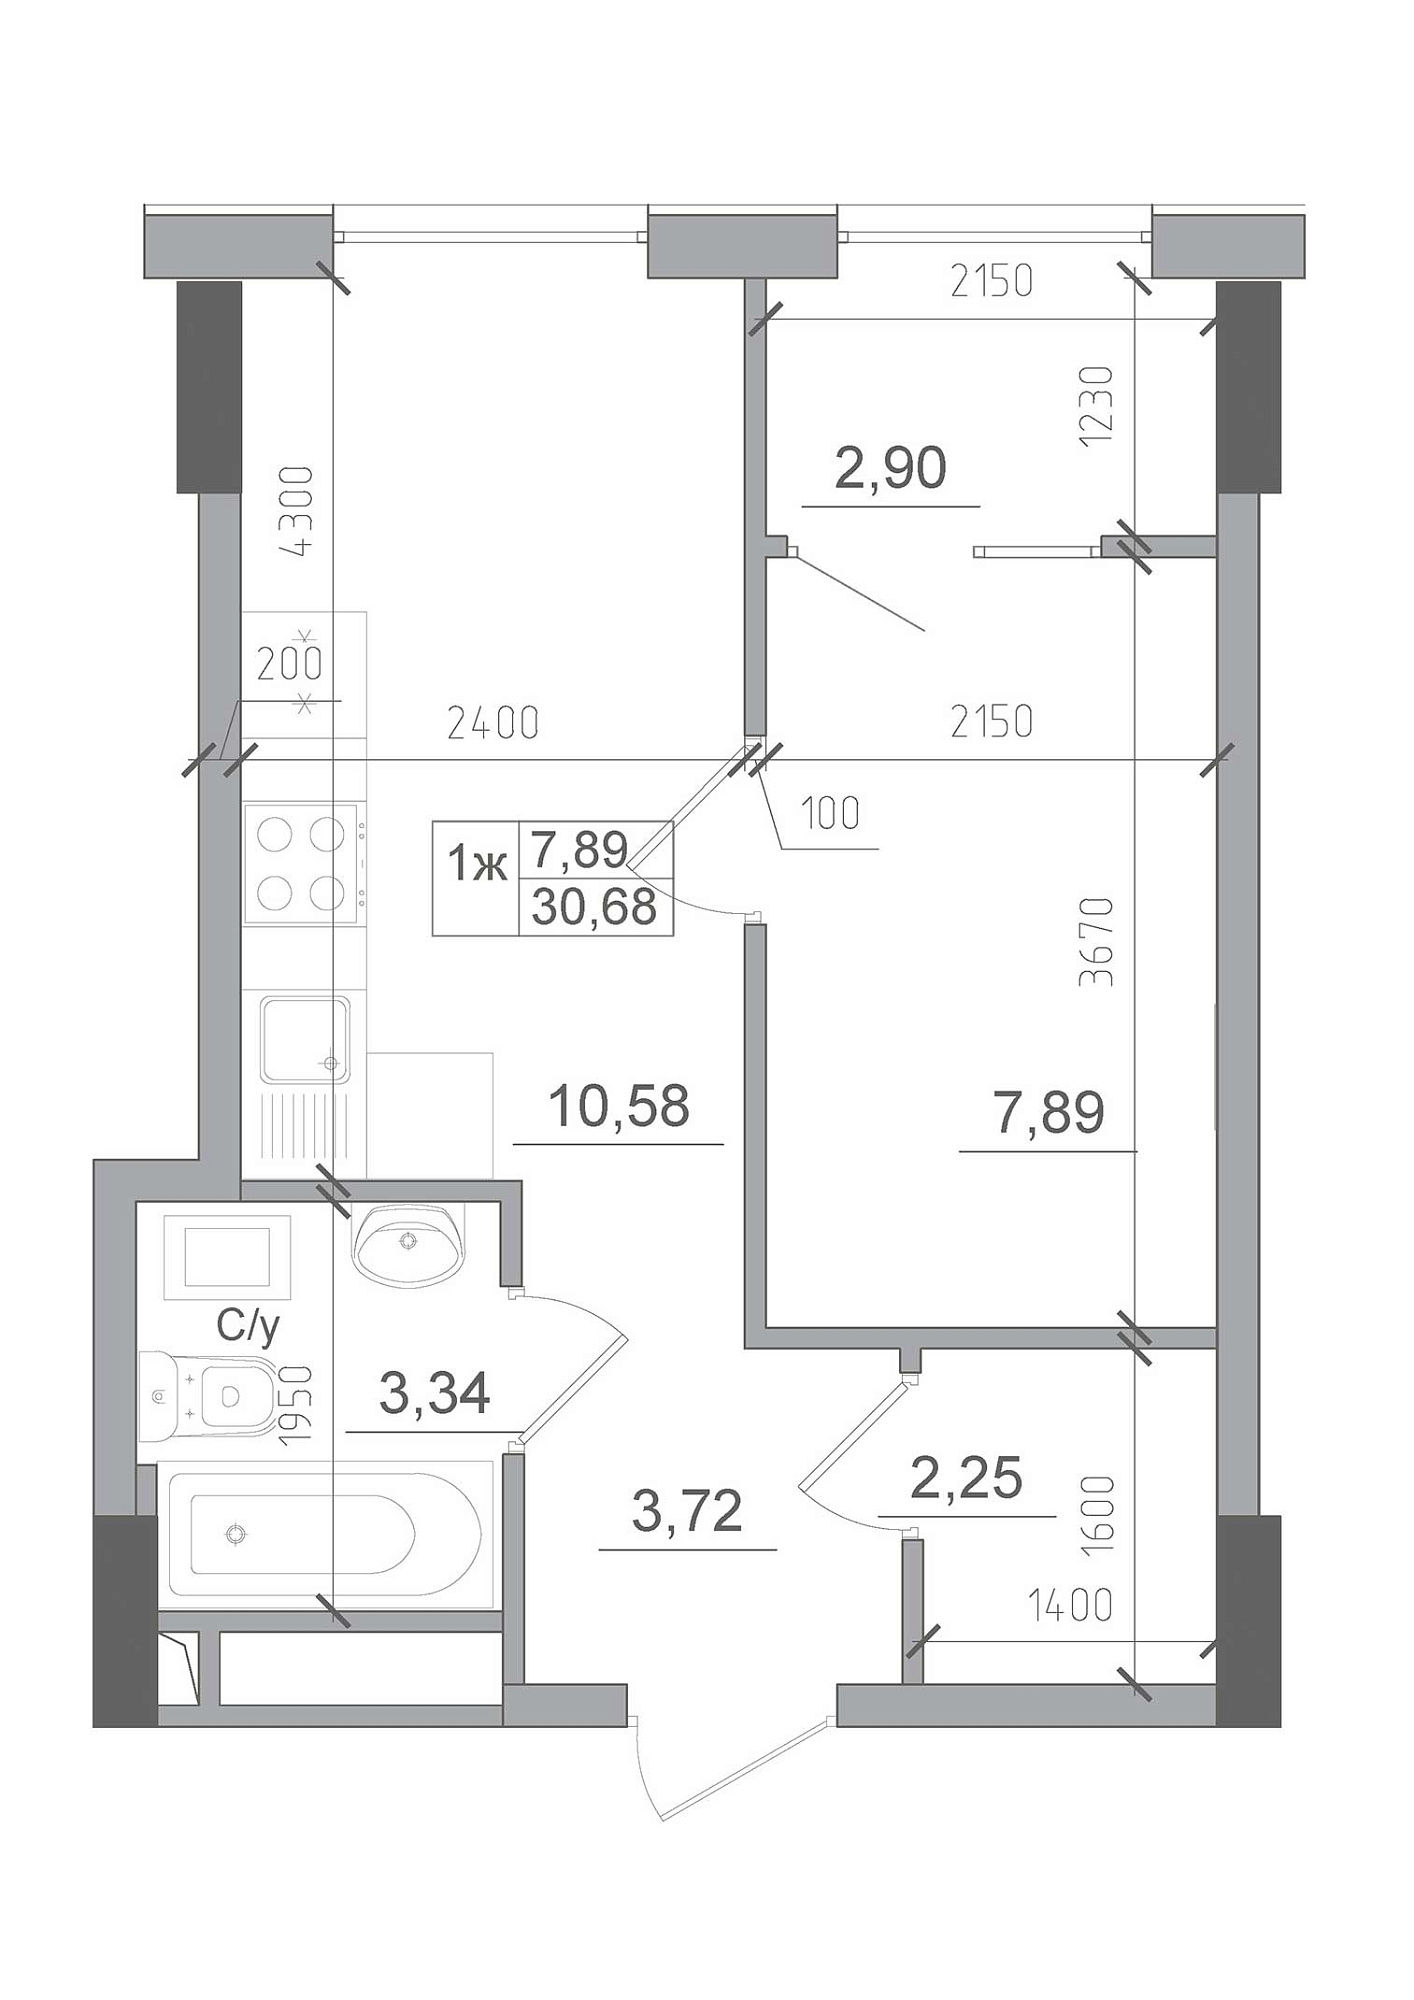 Планування 1-к квартира площею 30.68м2, AB-22-01/00012.